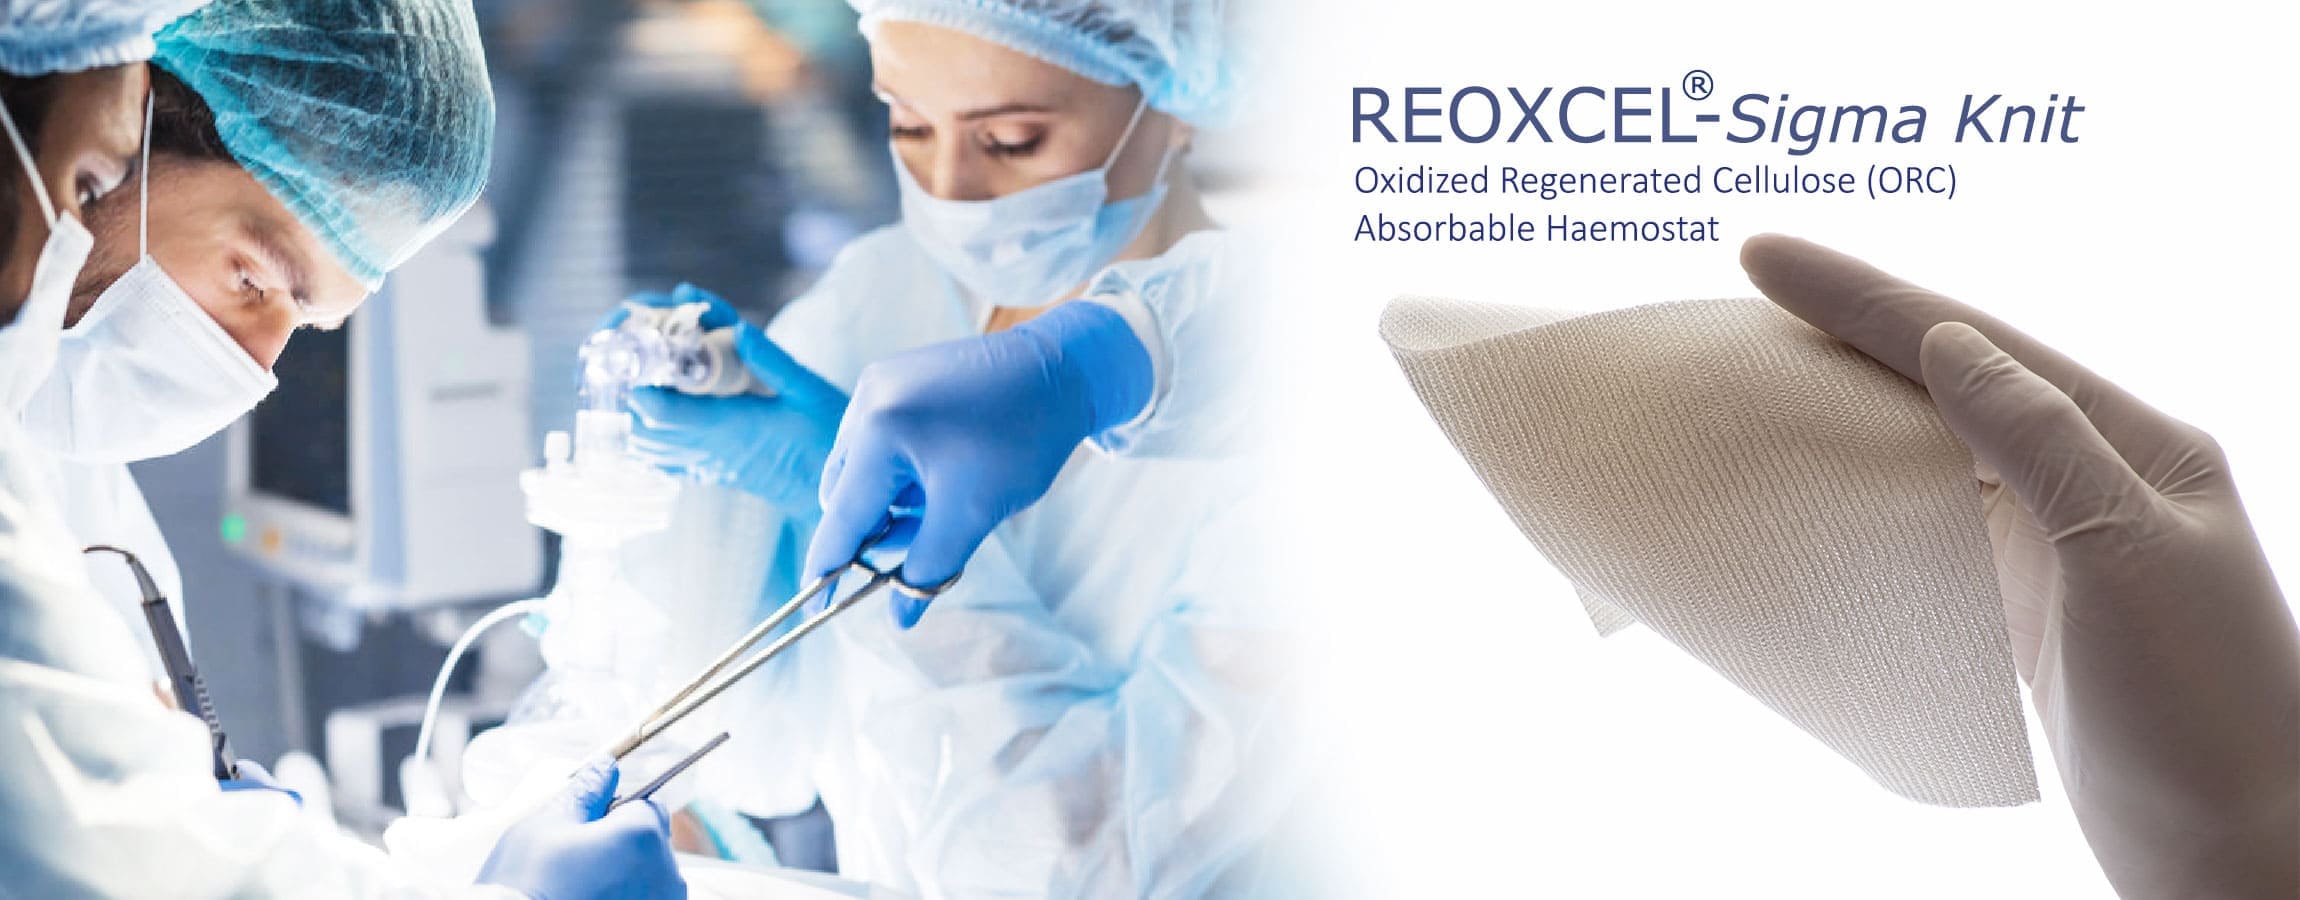 Reoxcel Sigma Knit absorbierbares Hämostatikum ist ein steriles hämostatisches (blutstillendes) Präparat, das aus oxidierter regenerierter Cellulose (ORC) (Polyanhydrid-Glucuronsäure) hergestellt wird und eine antibakterielle Wirkung gegen 40 Arten von Mikroorganismen hat.